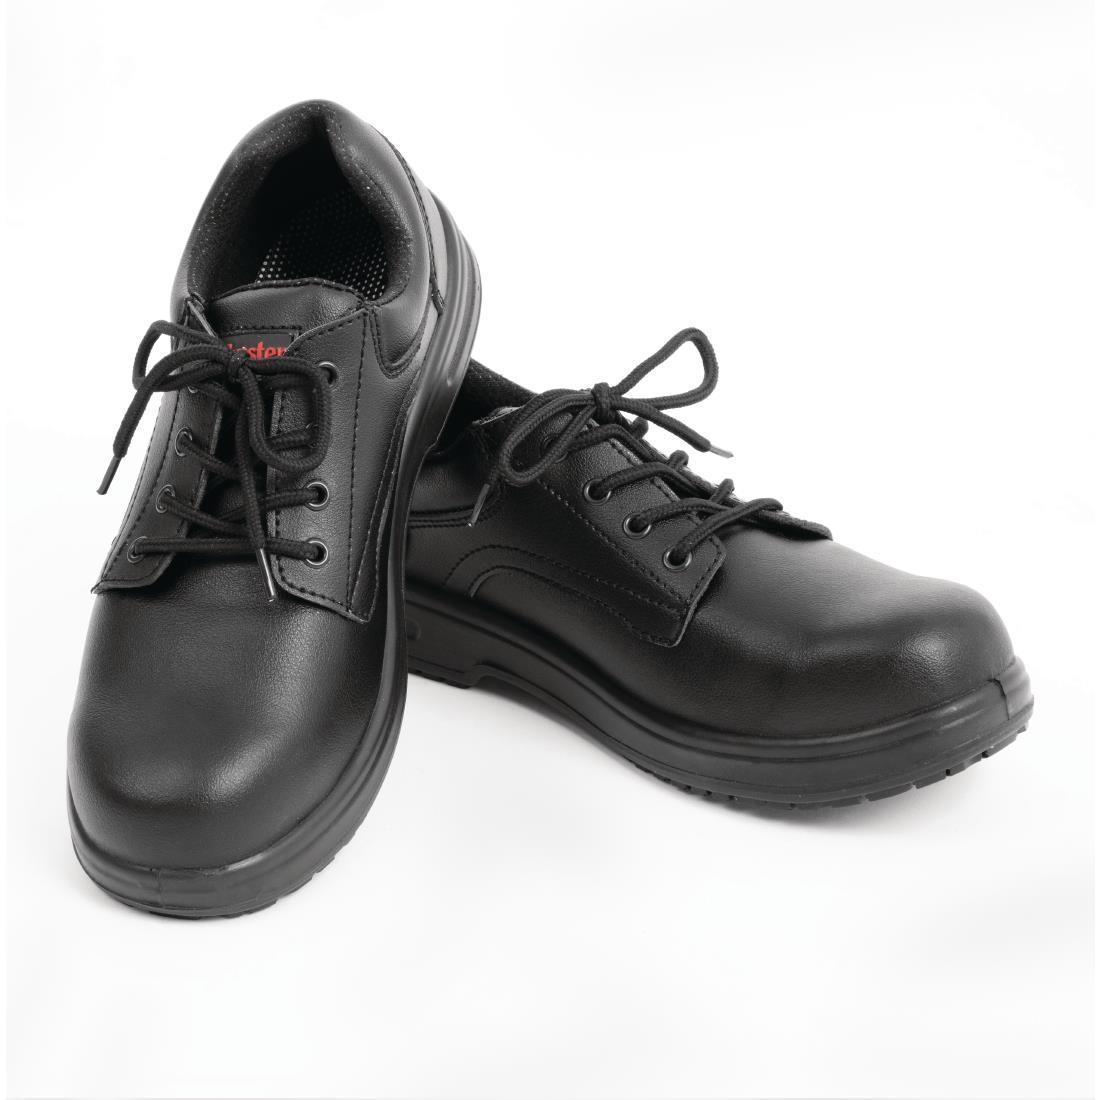 Slipbuster Basic Shoes Slip Resistant Black 40 - BB498-40  - 4